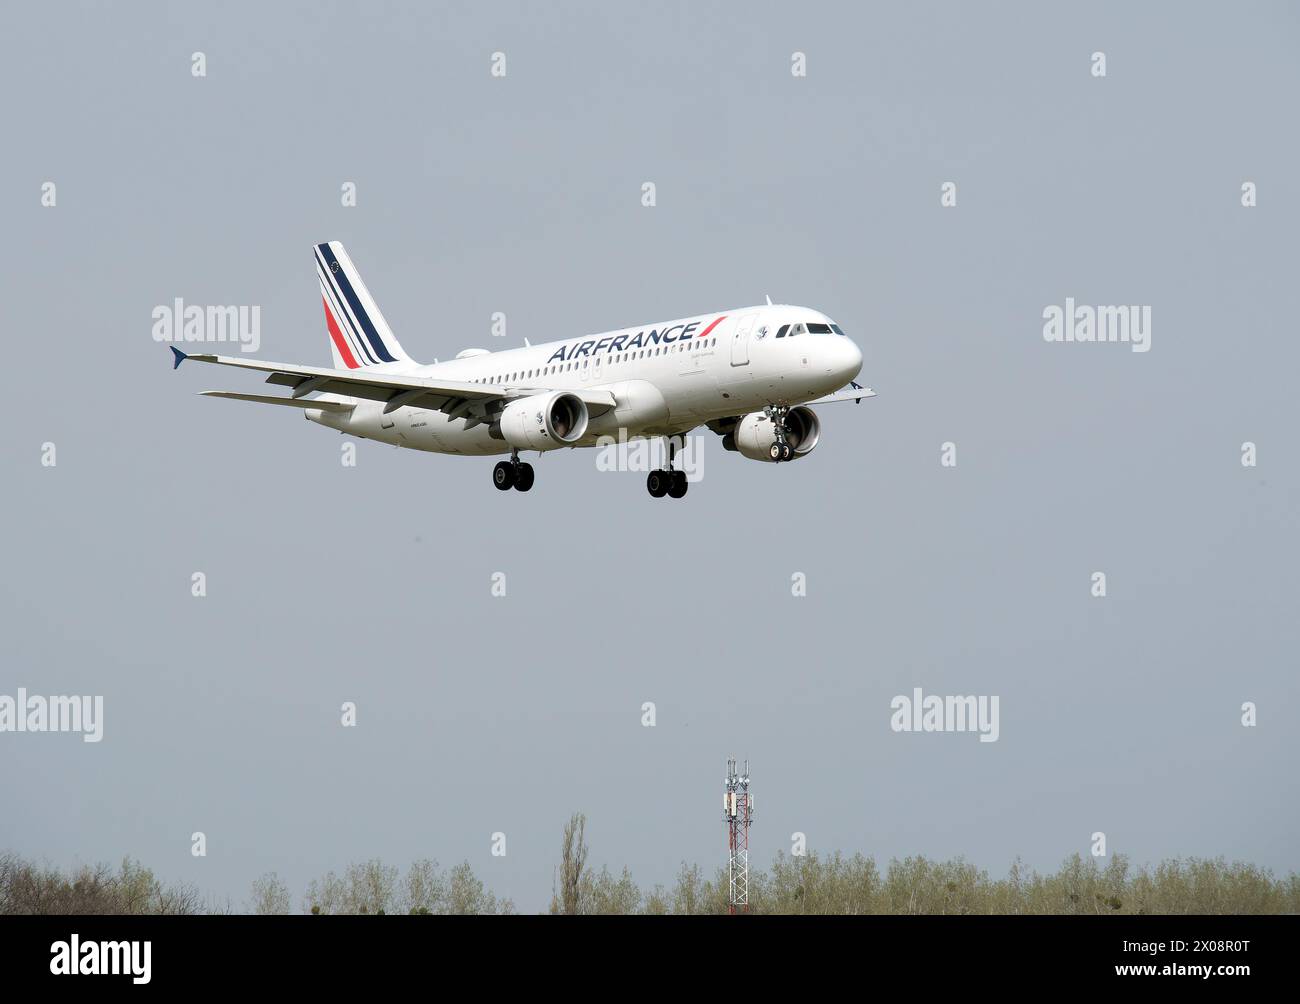 Air France (una delle più grandi compagnie aeree del mondo), Airbus A320, Cargo Hill, Budapest, Ungheria, Magyarország, Europa Foto Stock